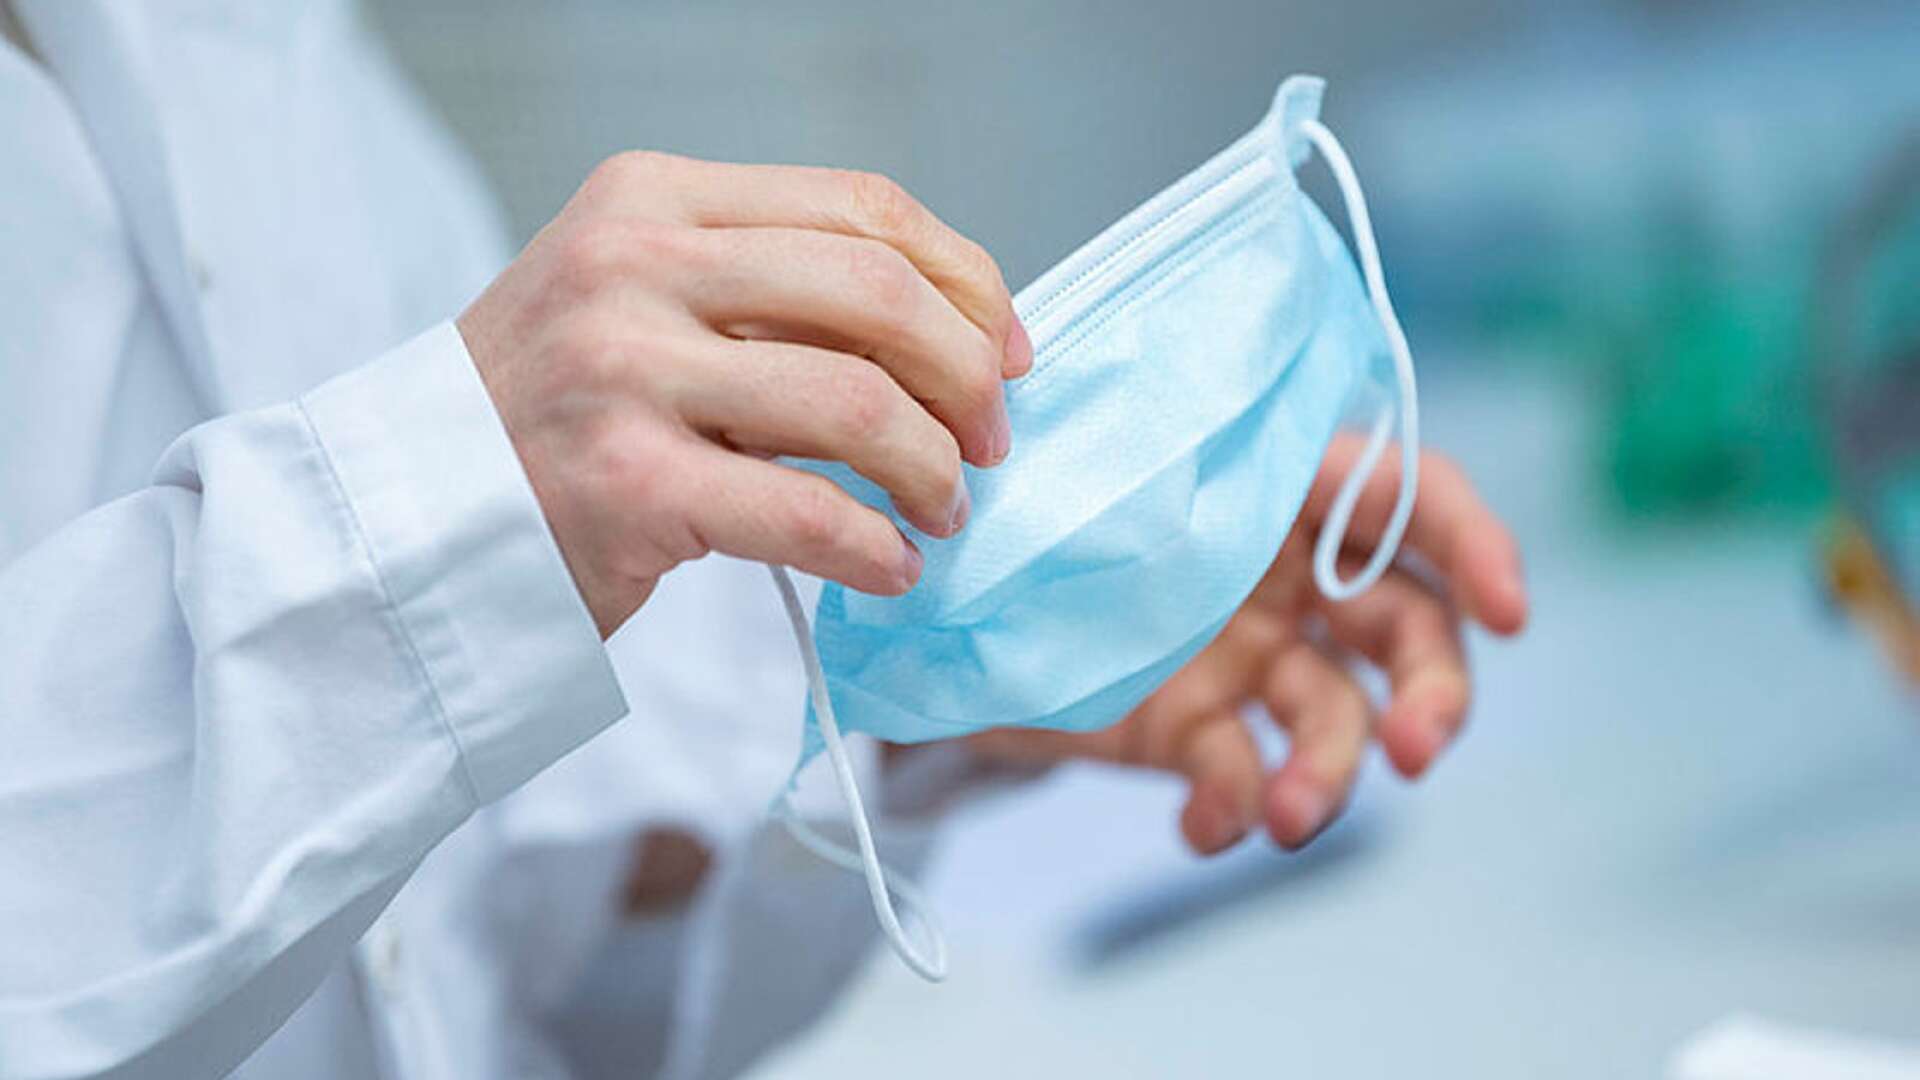 Från och med i dag rekommenderas alla patienter och besökare i vårdlokaler i Västra Götalandsregionen, att bära munskydd.